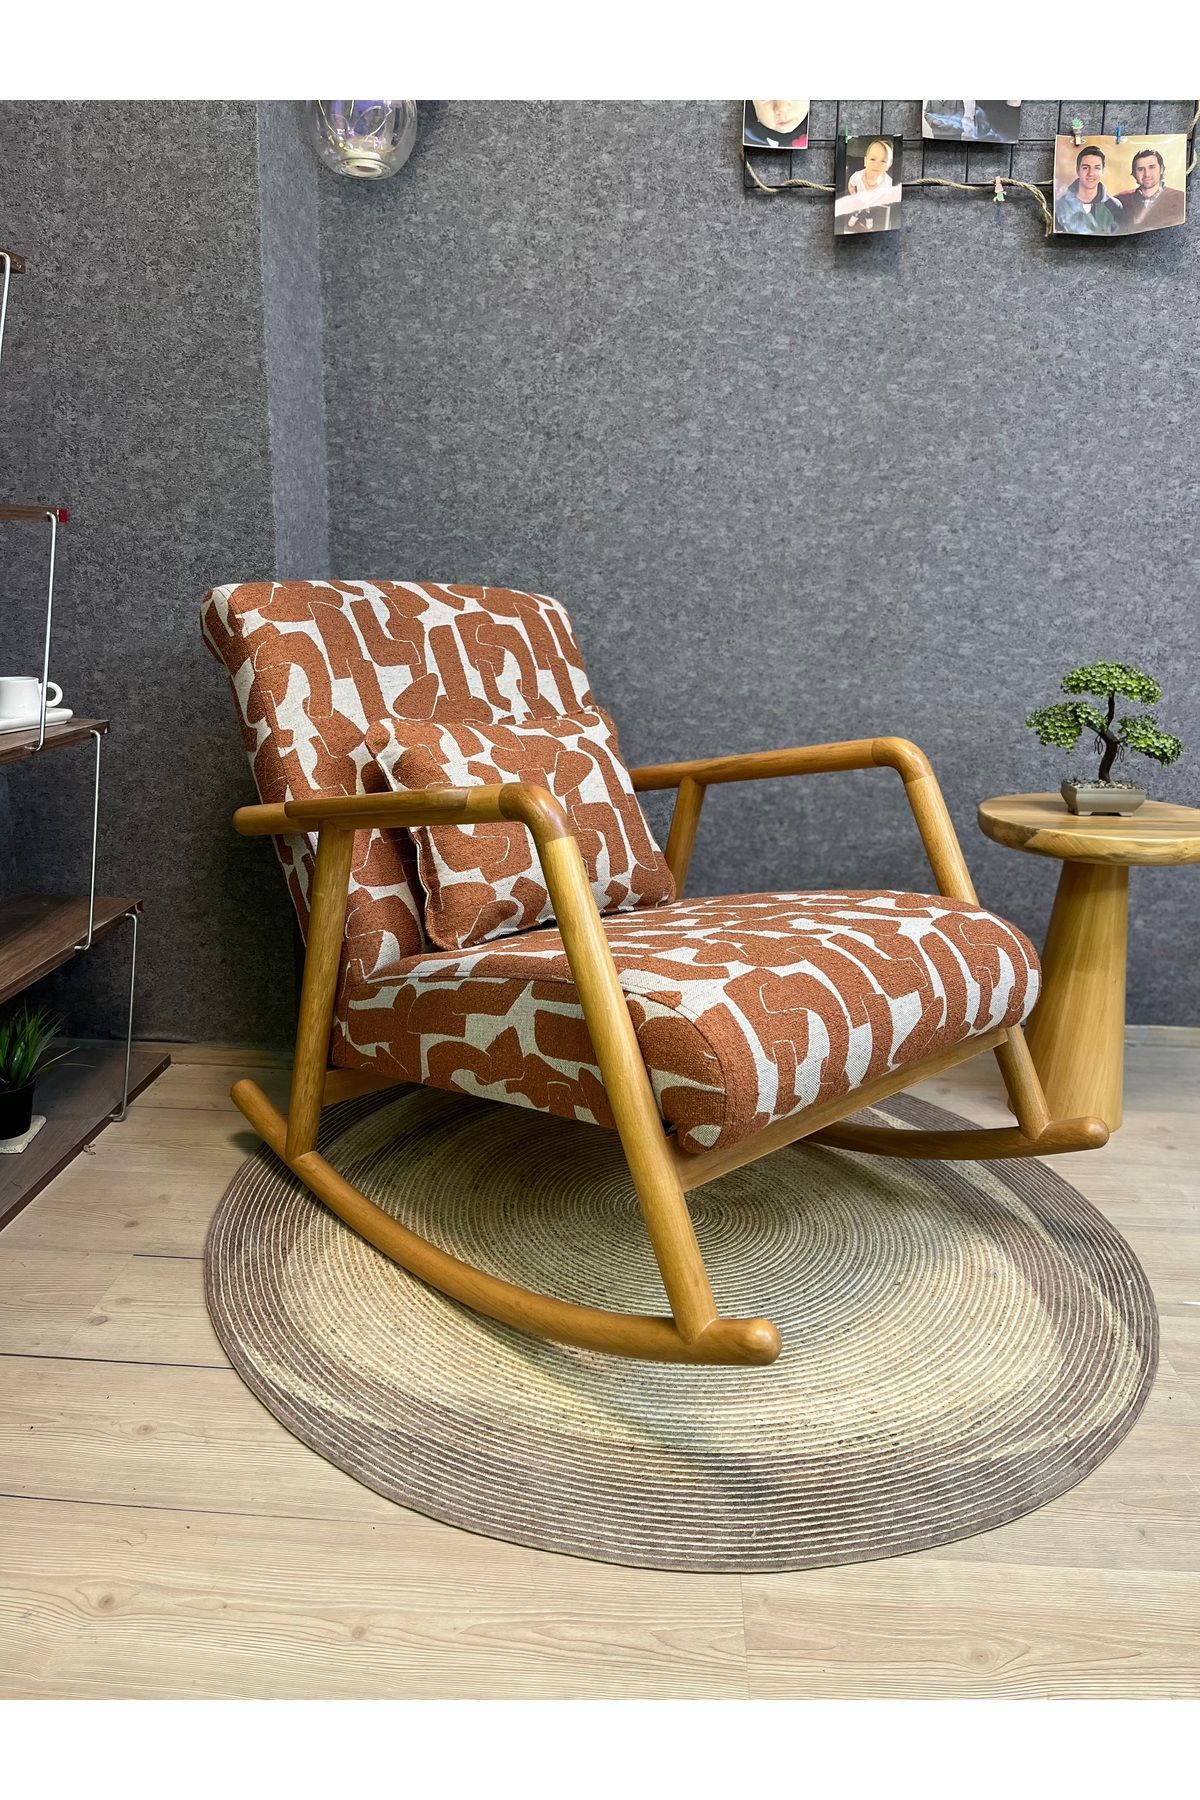 Asedia Minito Naturel Turuncu Desenli Sallanan Sandalye Dinlenme Koltuğu Anneler Günü Hediyesi